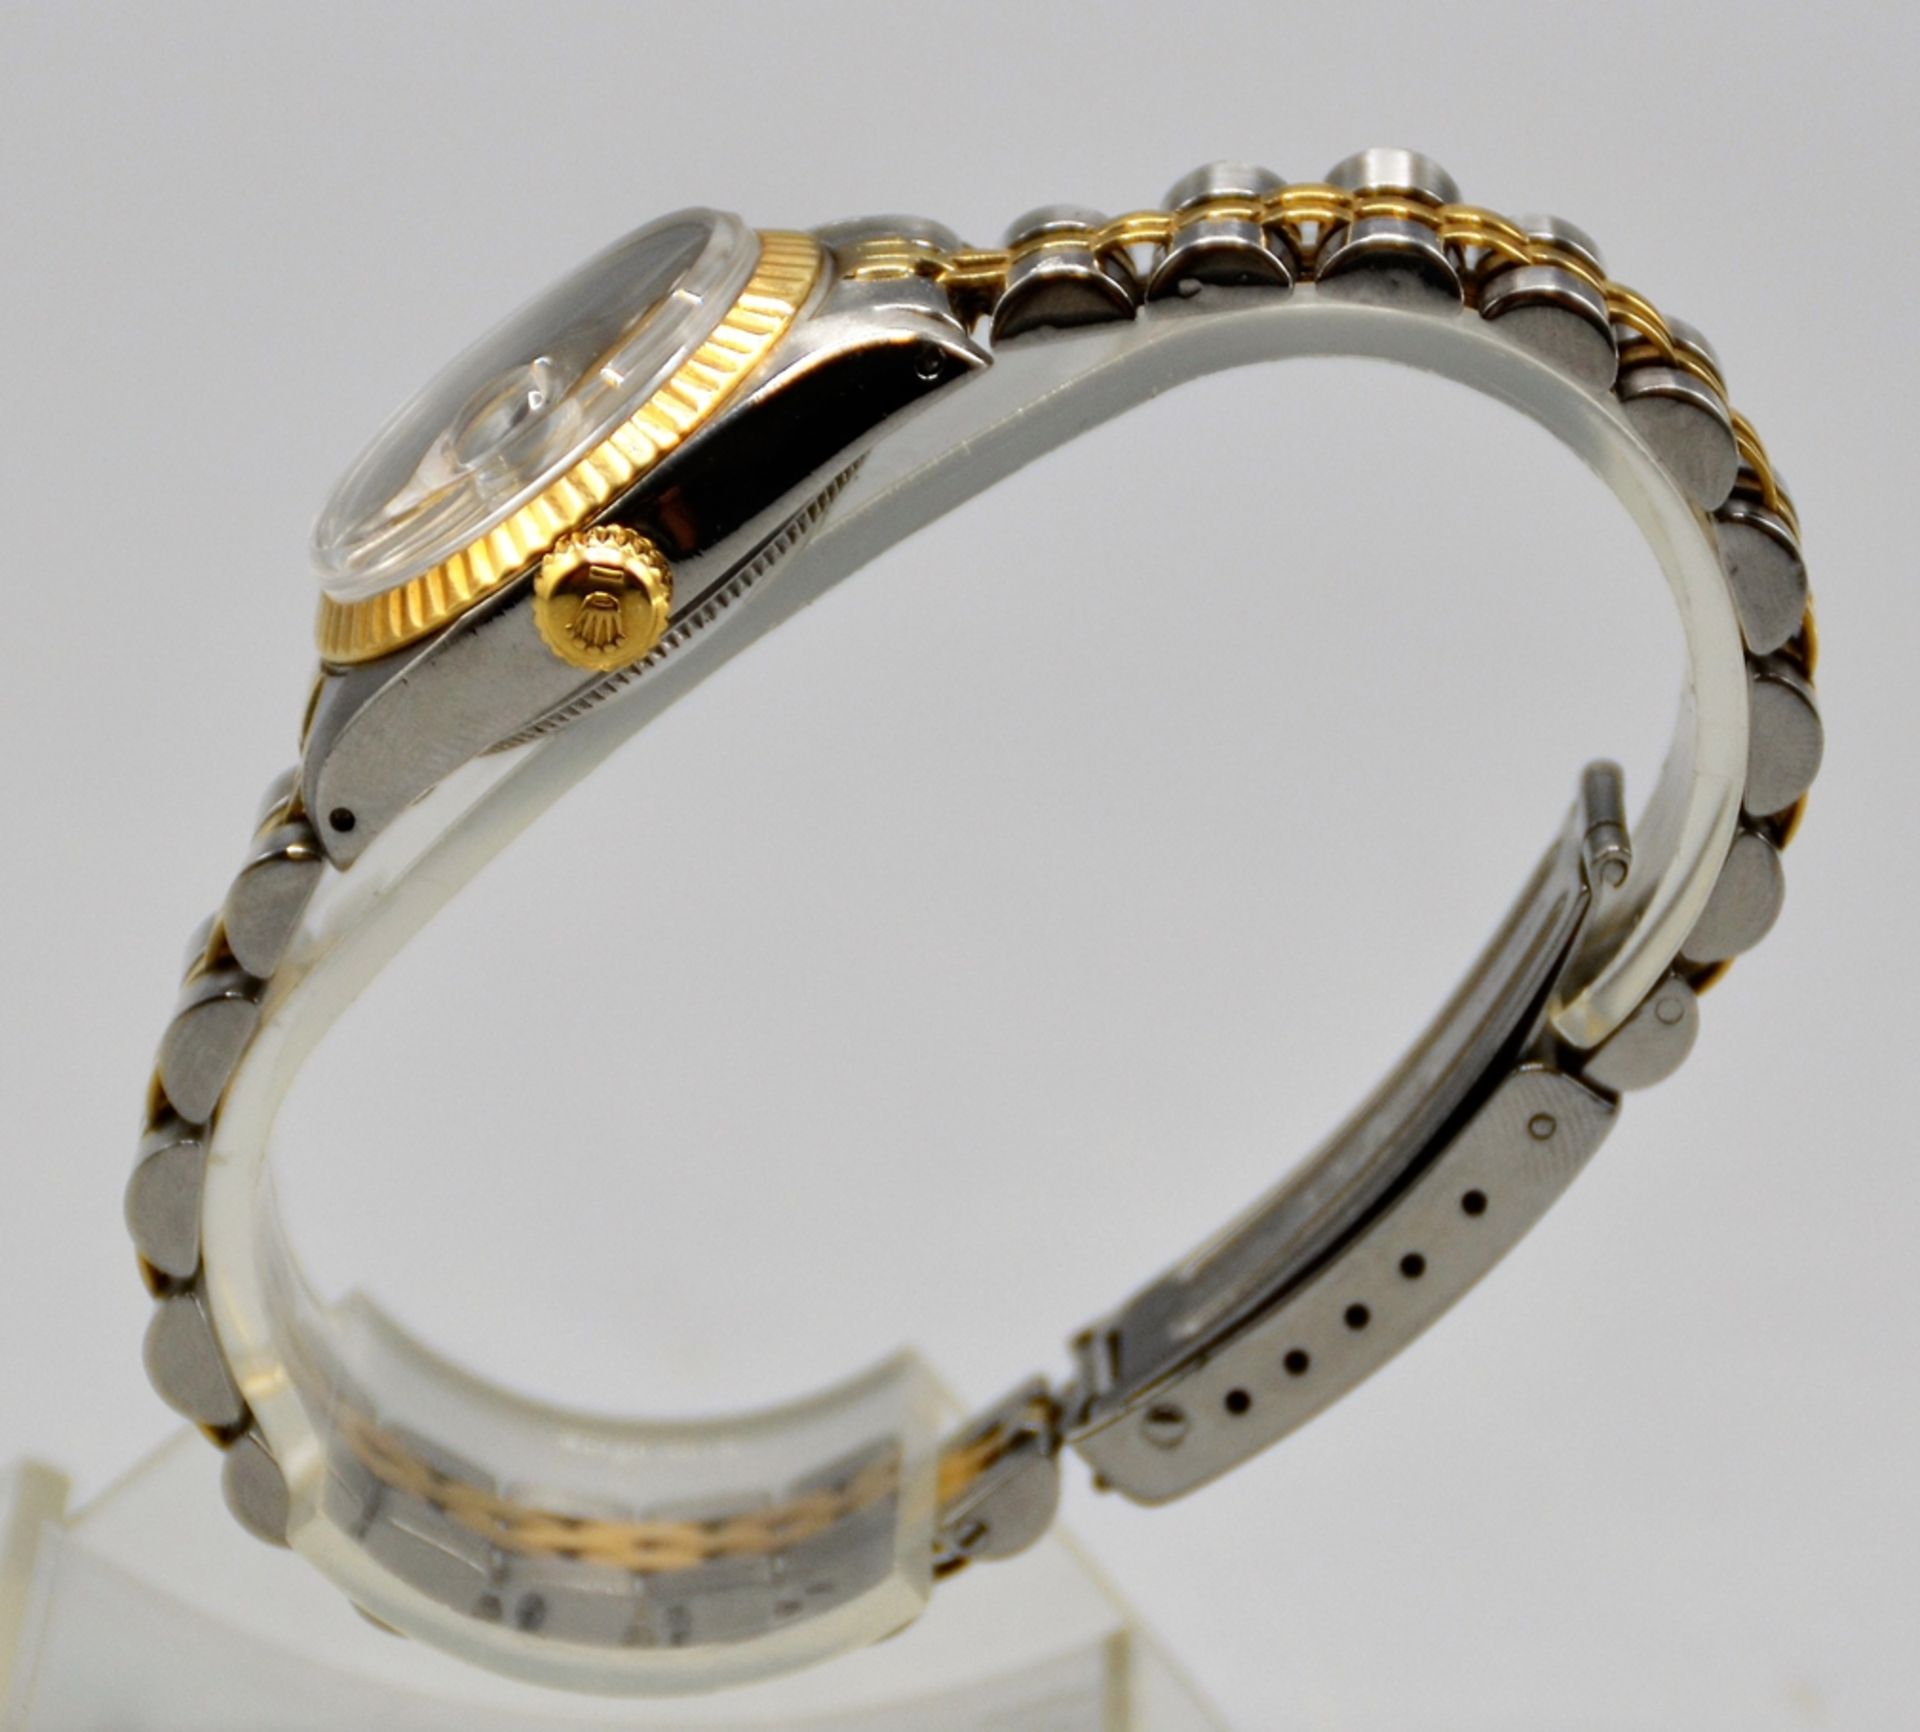 Rolex Oyster Perpetual Datejust Stahl / Gold / Diamanten mit Box und Papieren ( Garantiekarte ), Re - Bild 5 aus 9